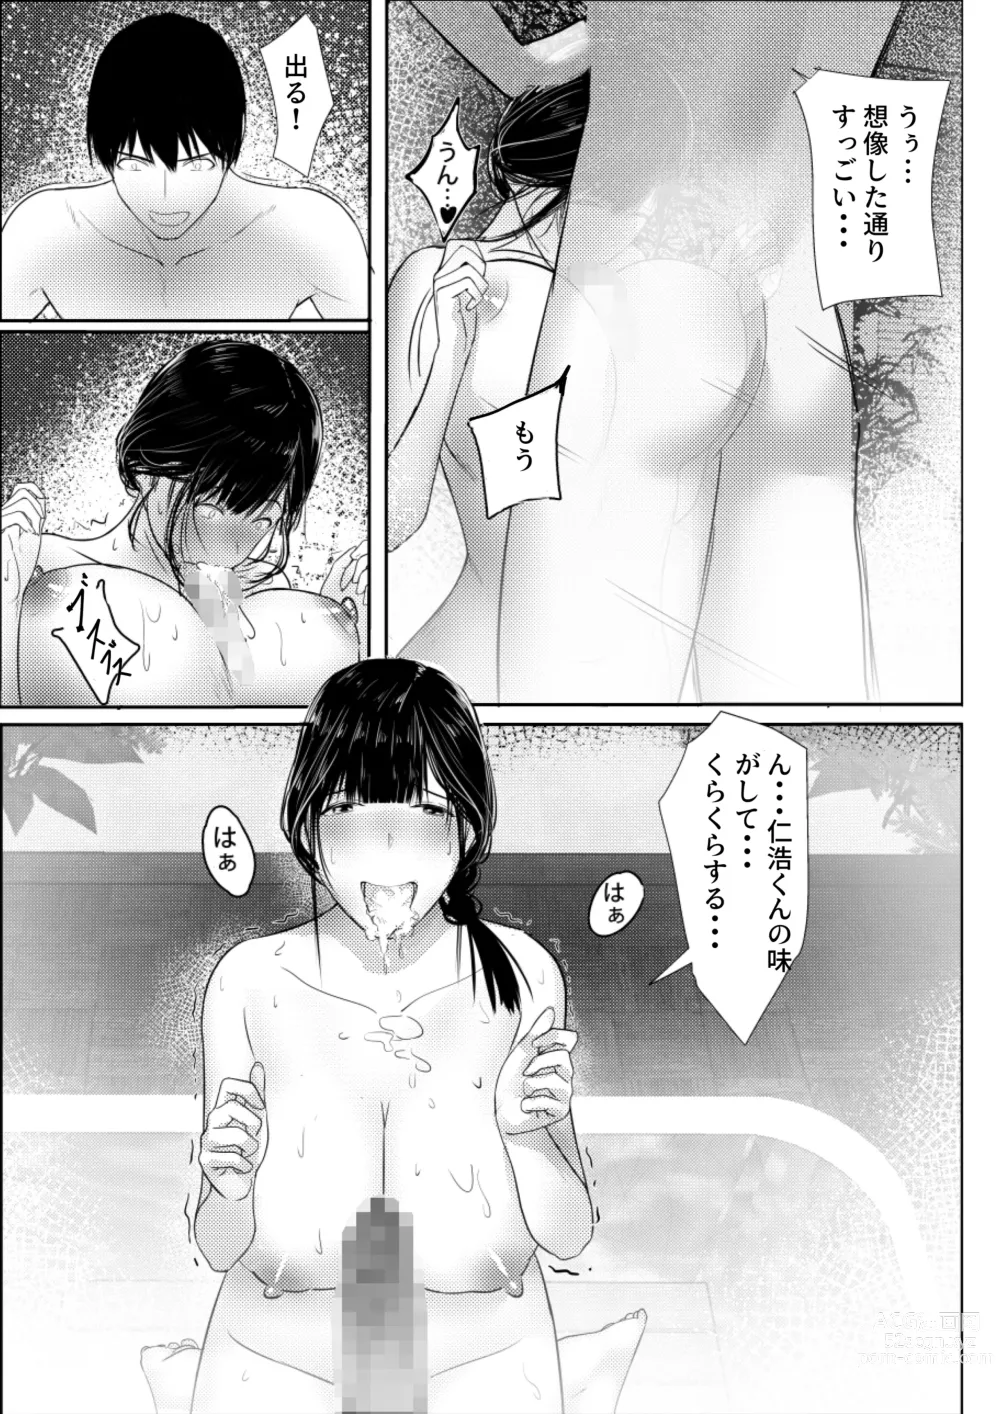 Page 16 of doujinshi Tanoshii Onsen Ryokan